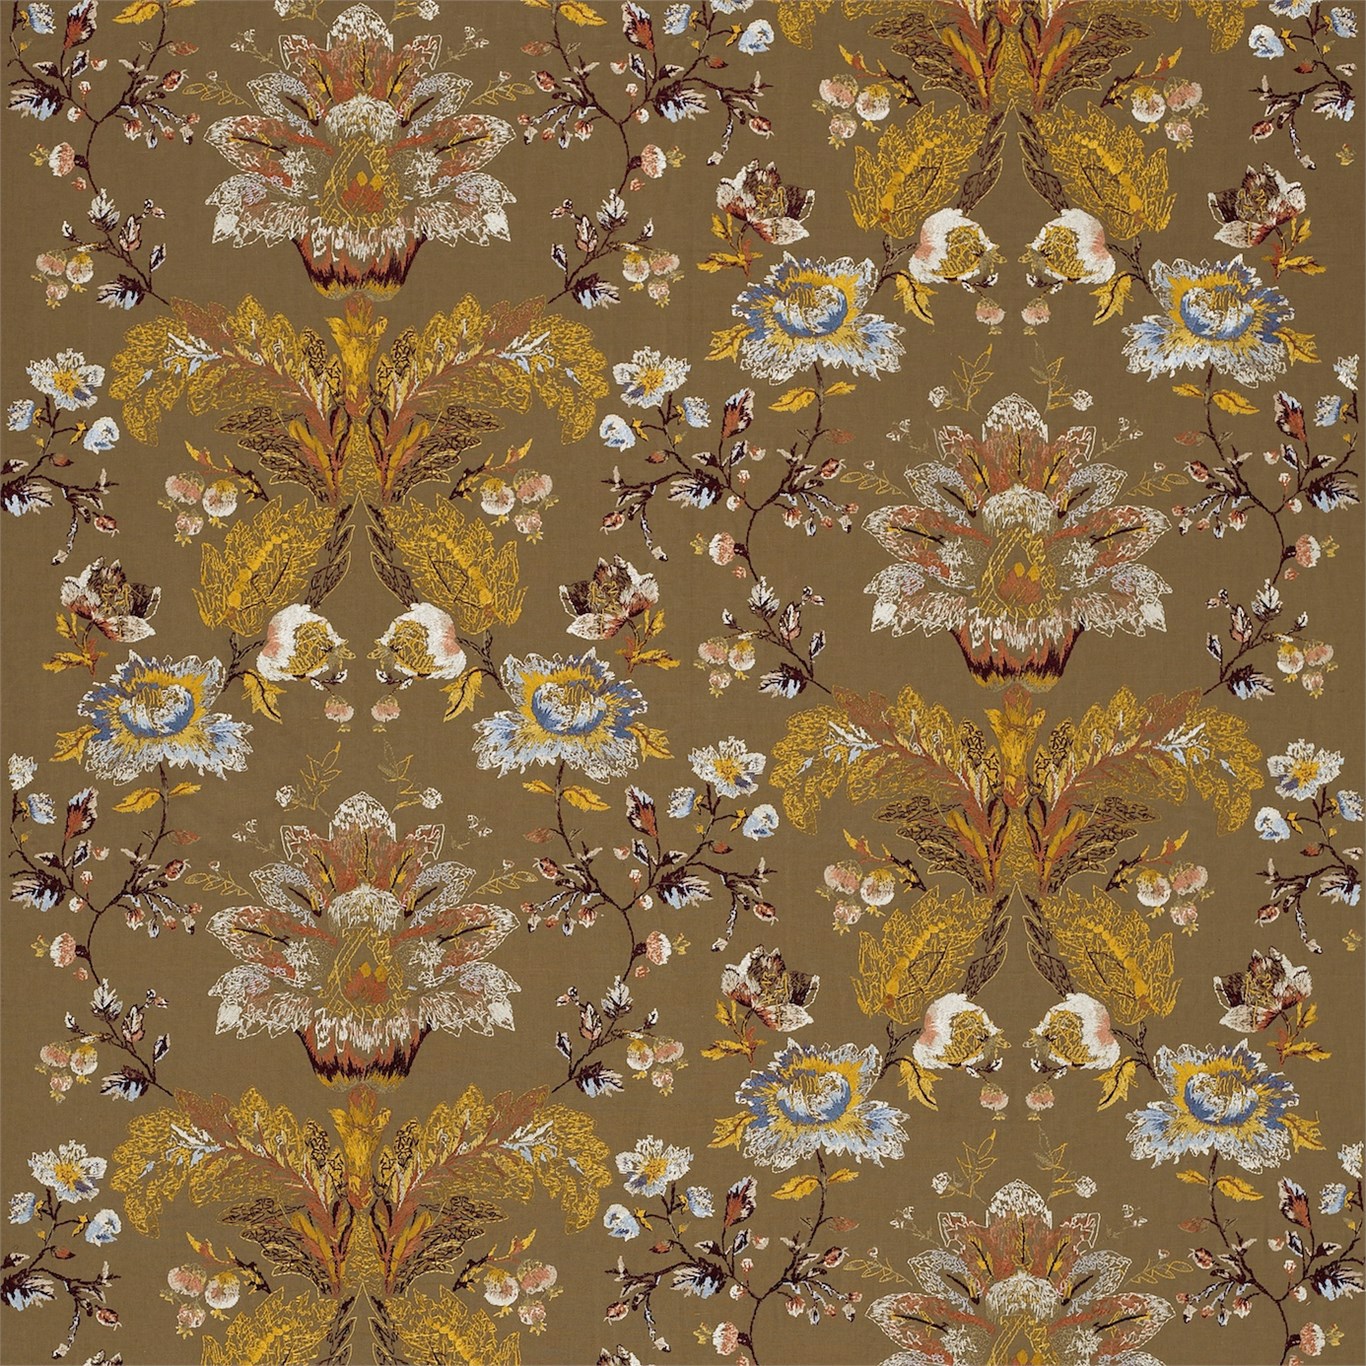 Stitch Damask Antique Fabric by ZOF